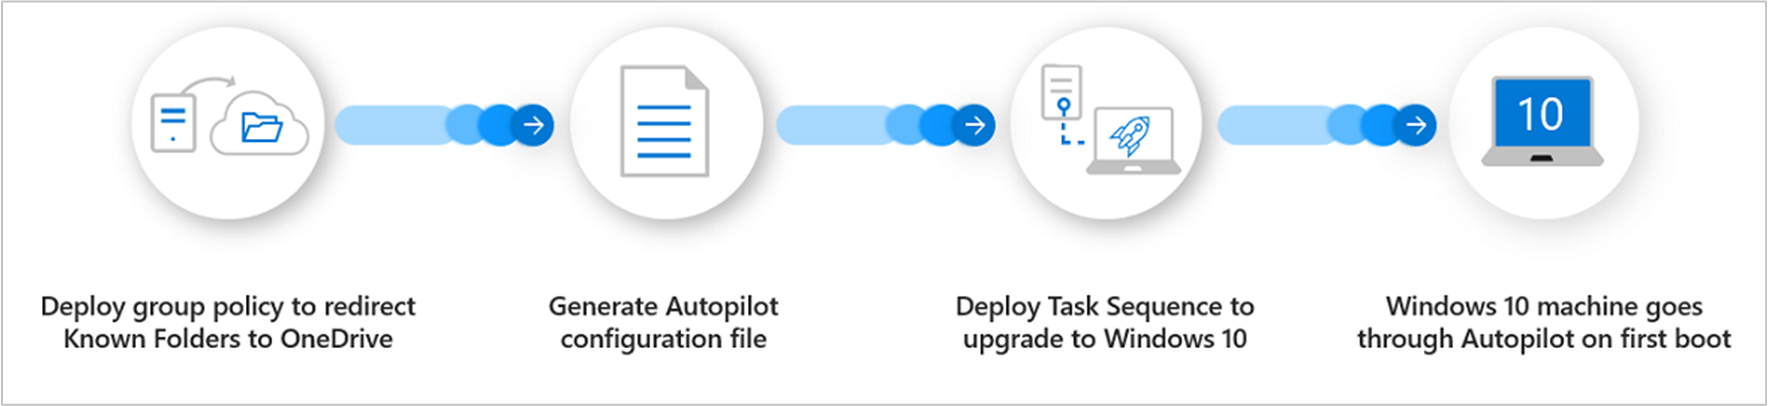 Processöversikt för Windows Autopilot för befintliga enheter